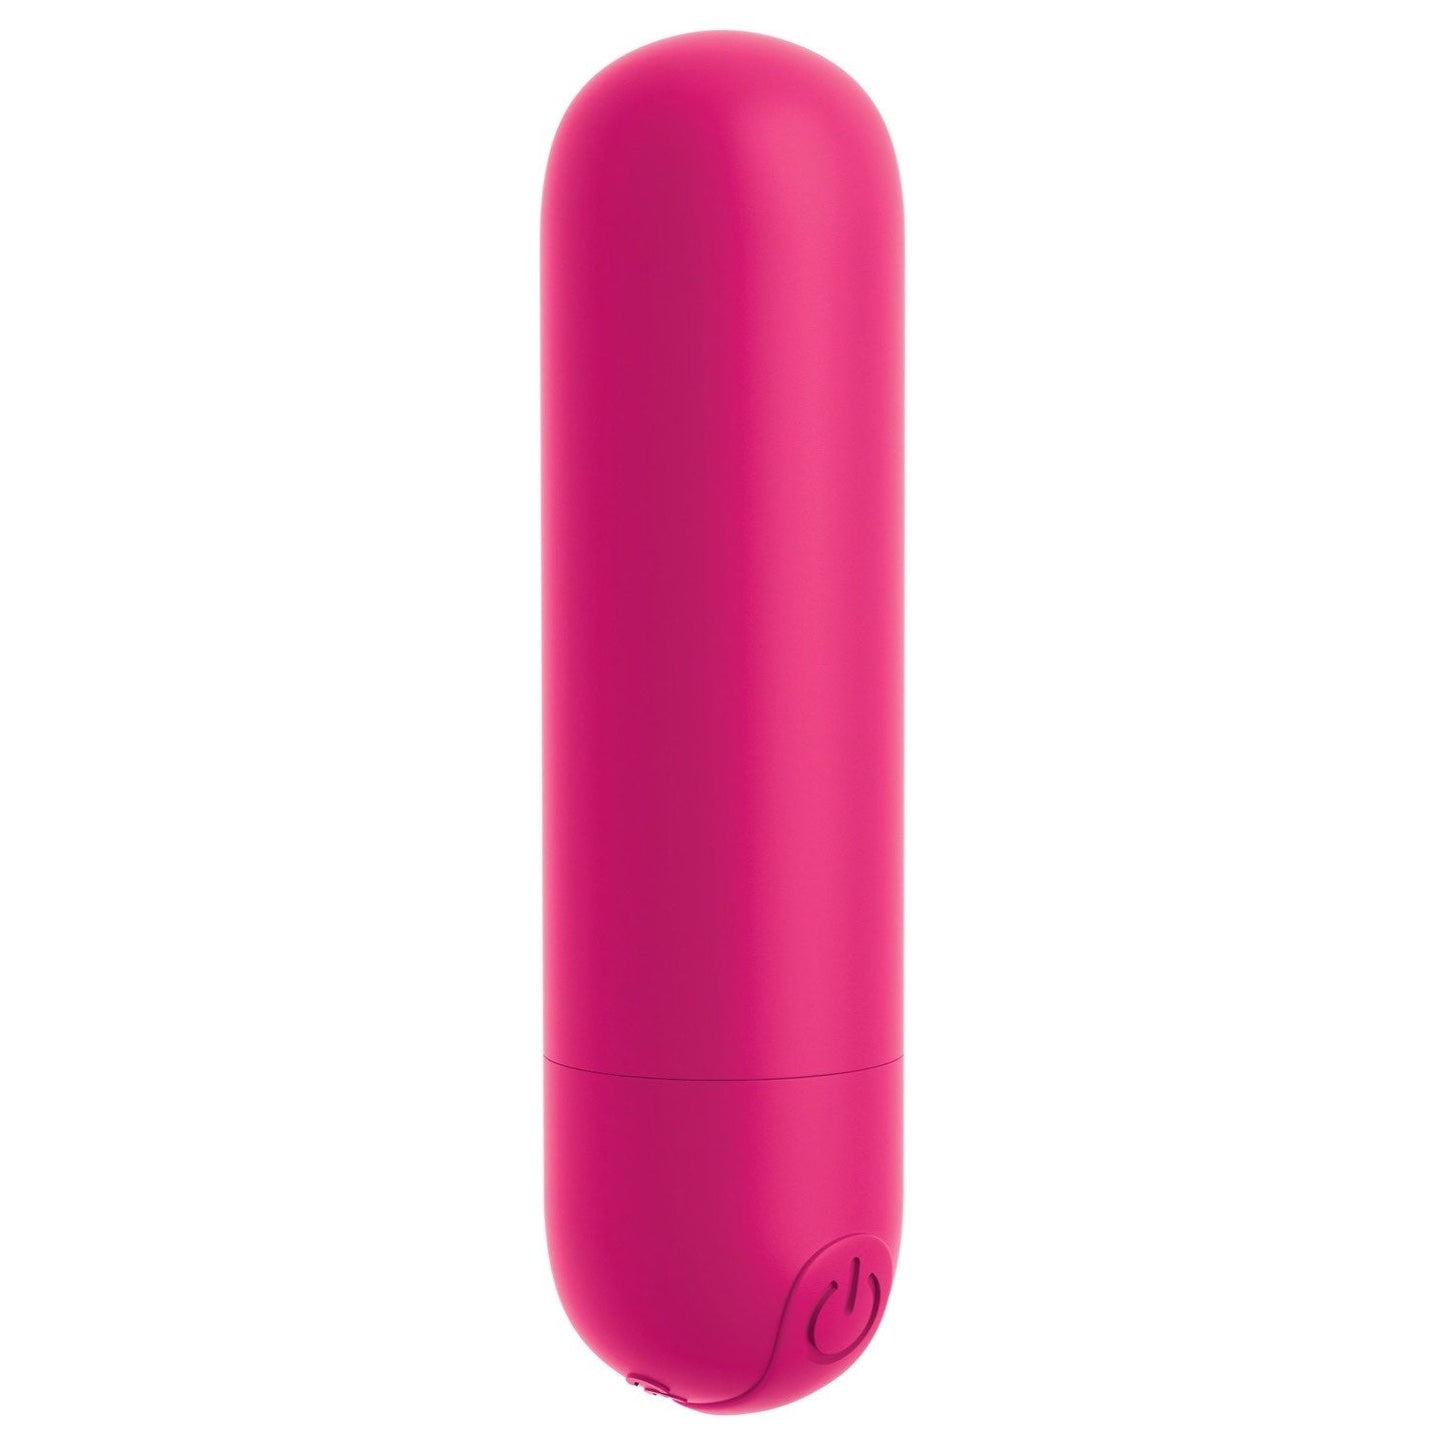 我的天啊！ Bullets #Play - 紫红色 USB 可充电子弹头